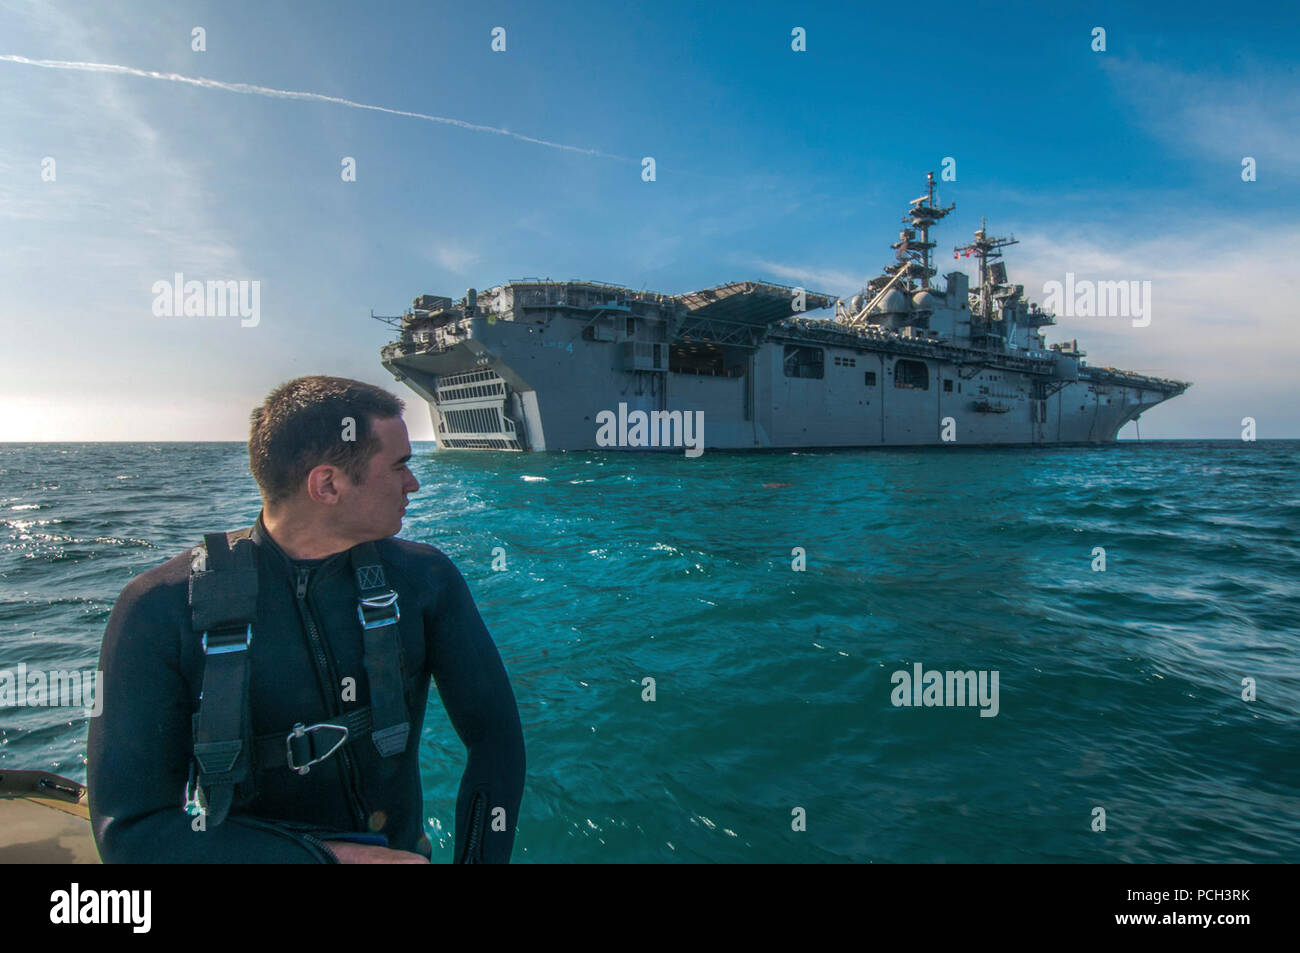 Ozean (31. 4, 2012) ein Such- und Rettungs- schwimmer zu den amphibischen Angriff Schiff USS Boxer (LHD4) steht Watch an Bord eines 7-m-steife Rumpf Schlauchboot zugeordnet. Boxer ist derzeit die Durchführung von Operationen an der Küste von Südkalifornien. Stockfoto